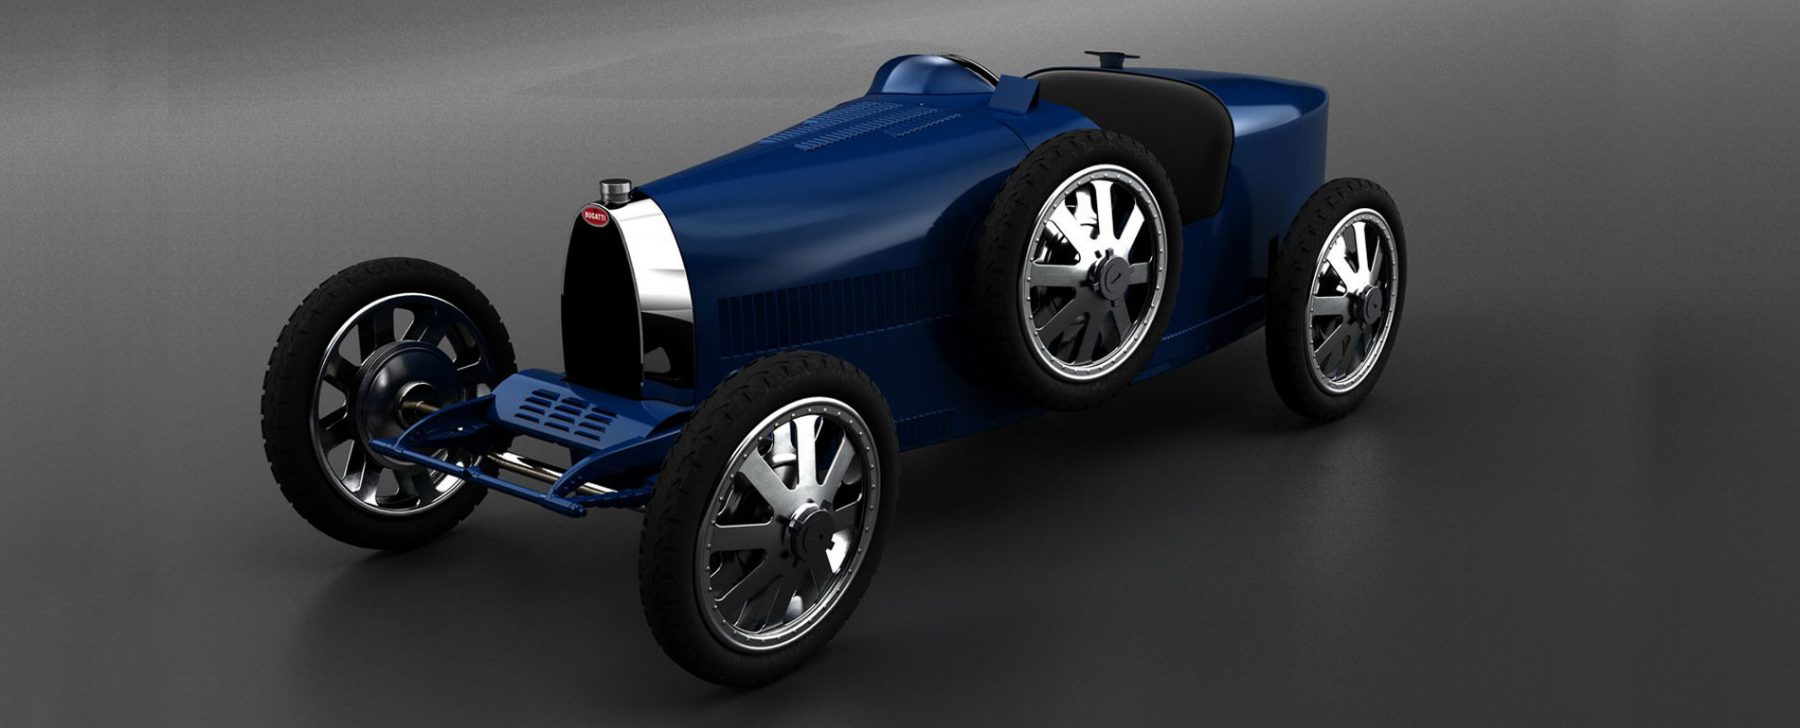 Bugatti Type 35 Baby II